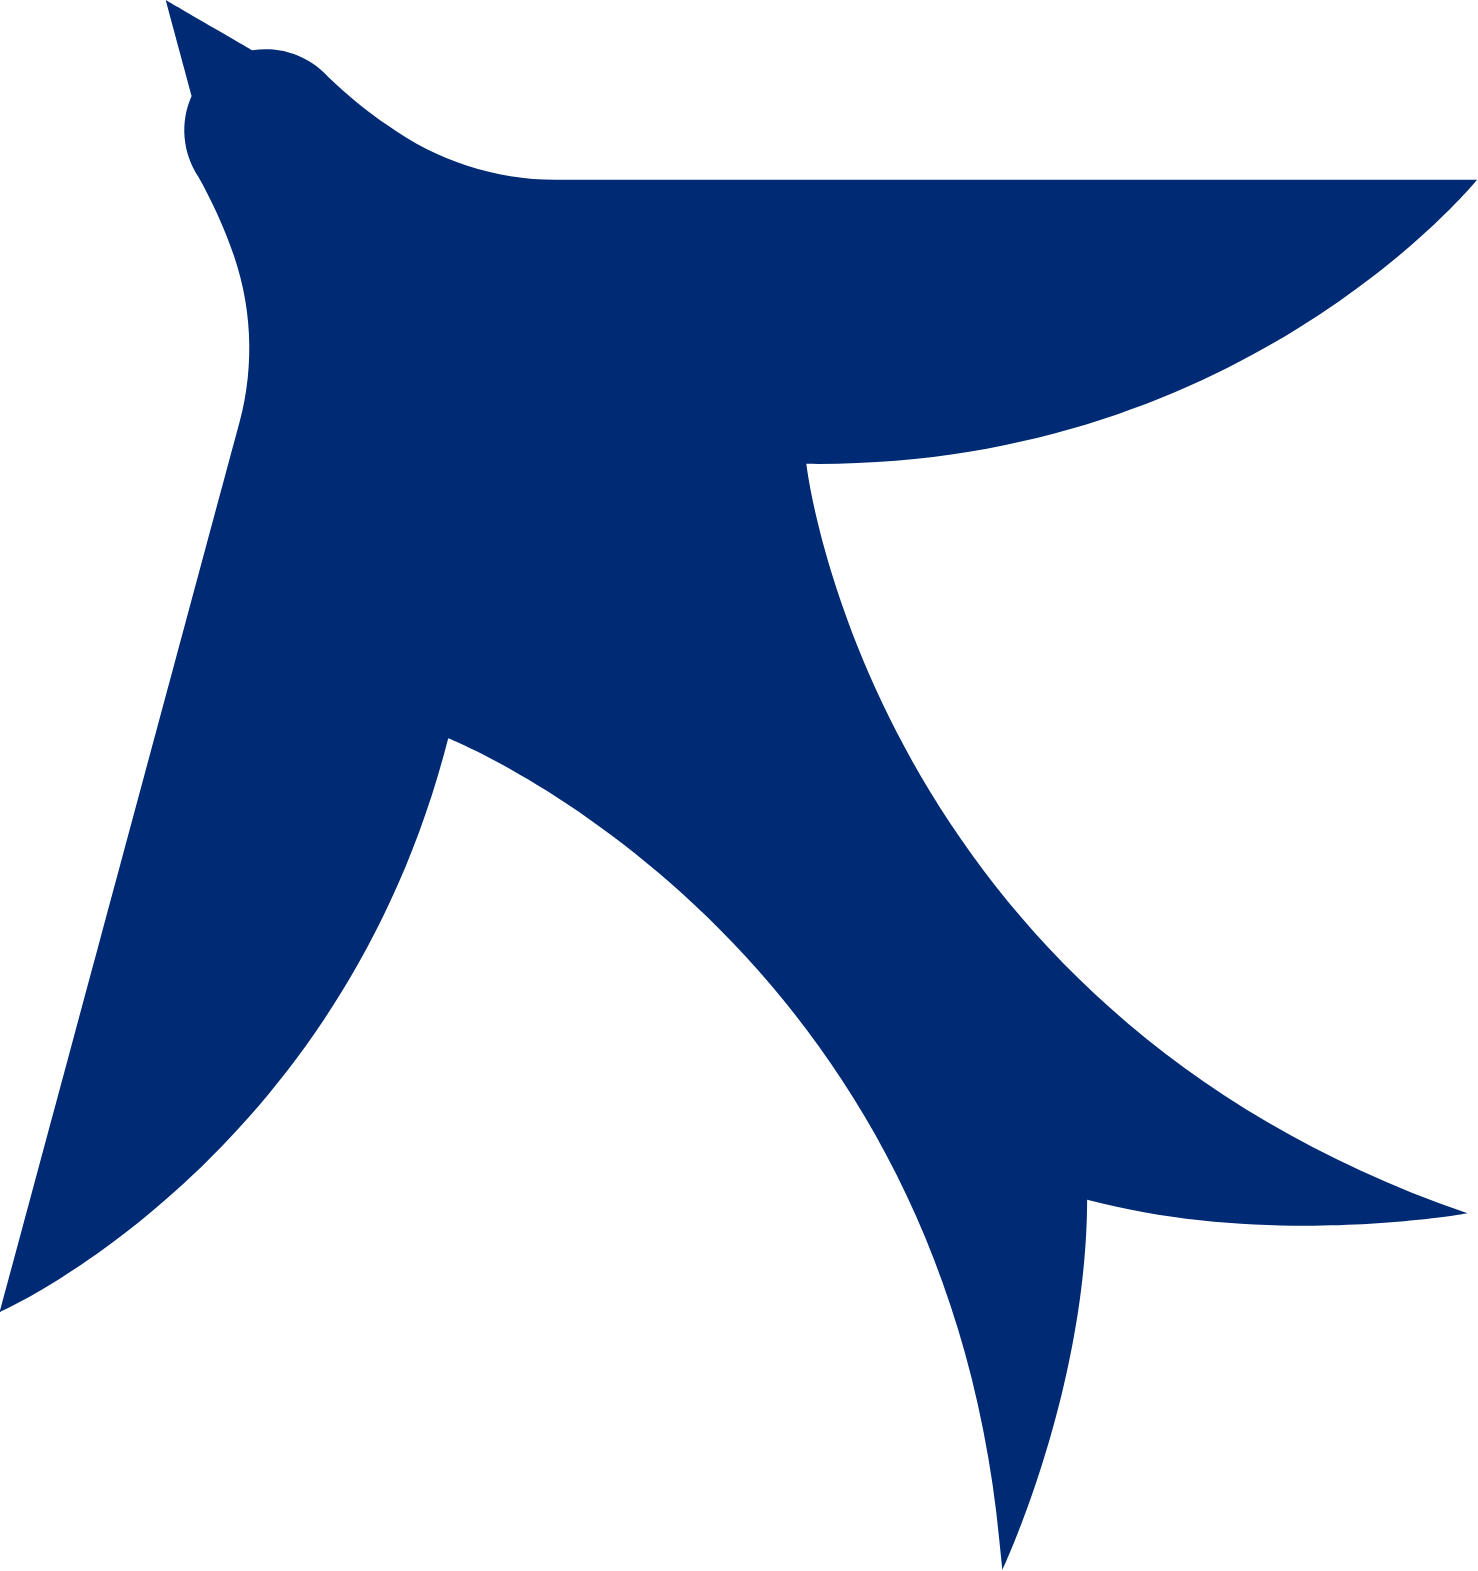 Marten Transport logo (transparent PNG)